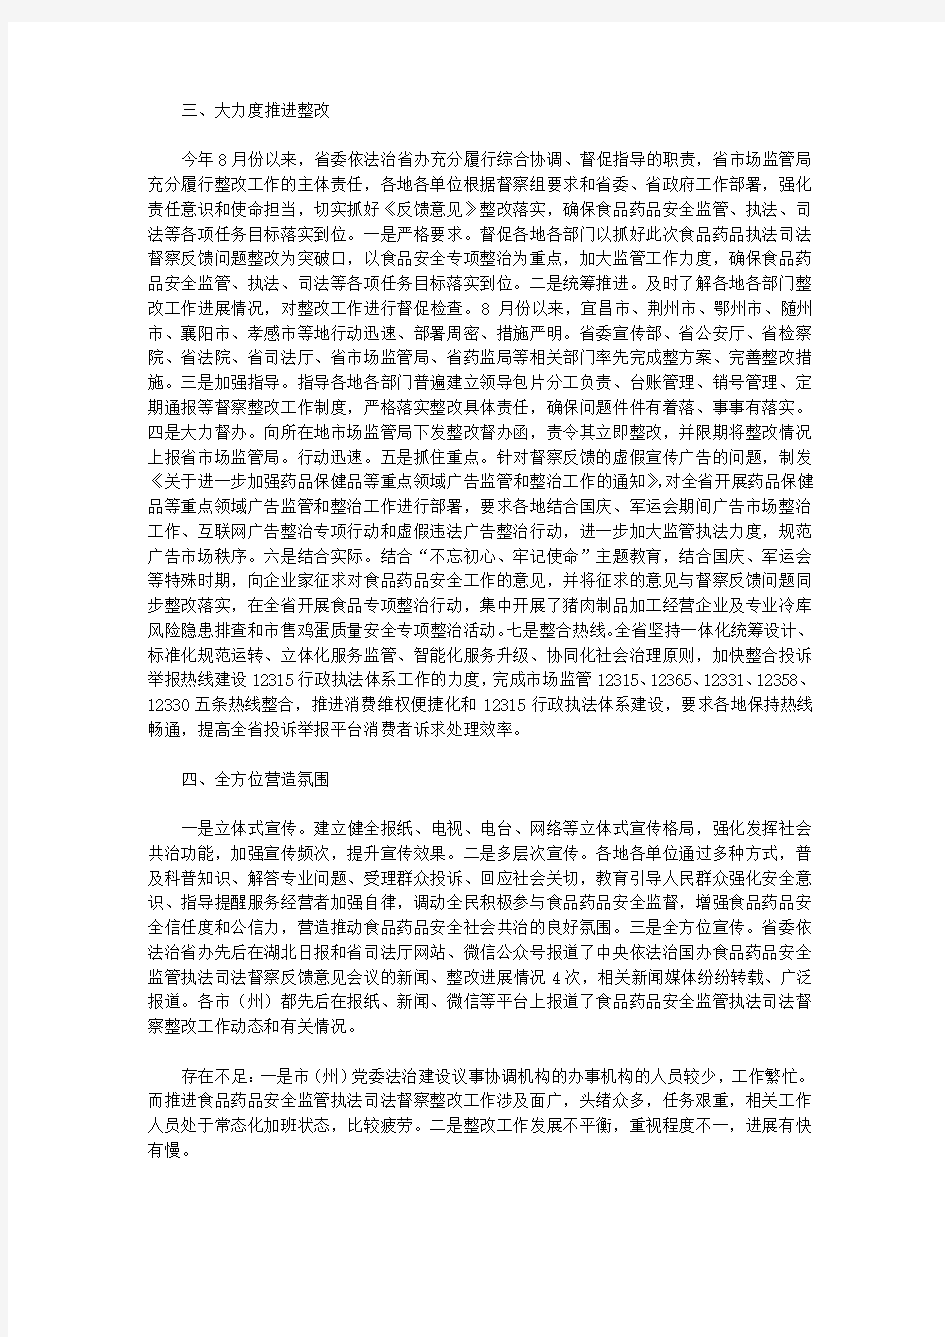 湖北省食品药品监管执法司法督察整改工作进展情况(2019)